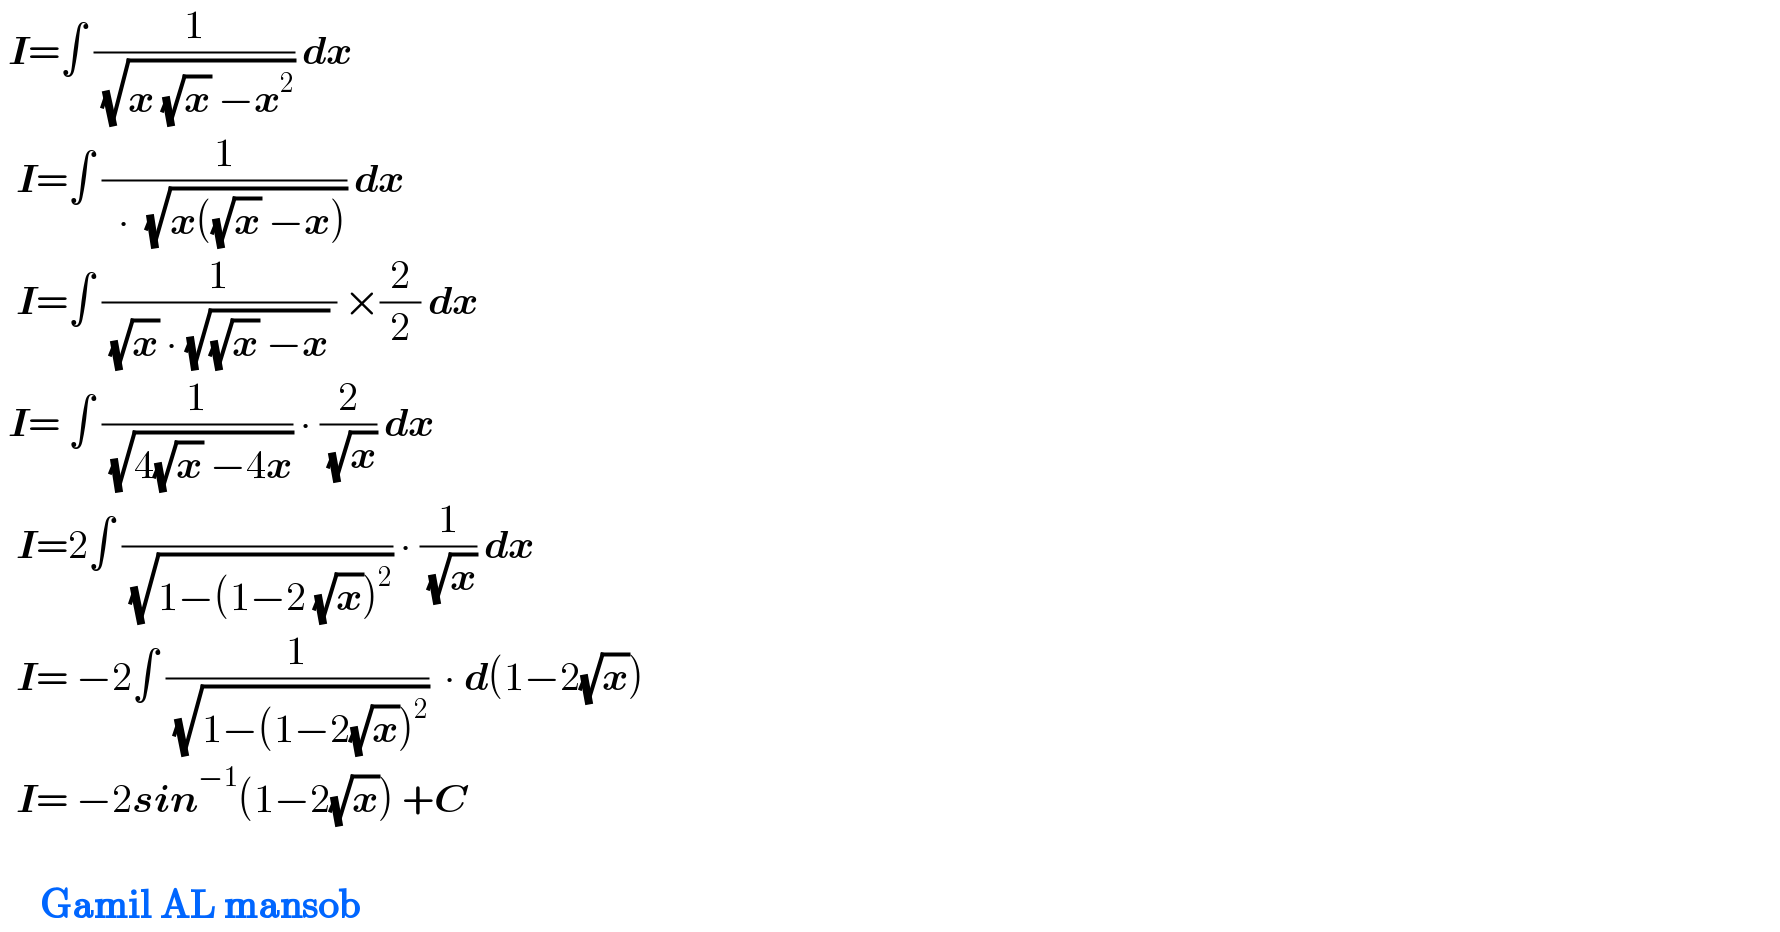  I=∫ (1/( (√(x (√x) −x^2 )))) dx     I=∫ (1/(  ∙  (√(x((√x) −x))))) dx    I=∫ (1/( (√x) ∙ (√((√x) −x)) )) ×(2/2) dx   I= ∫ (1/( (√(4(√x) −4x)))) ∙ (2/( (√x))) dx    I=2∫ ( /( (√(1−(1−2 (√x))^2 )))) ∙ (1/( (√x))) dx     I= −2∫ (1/( (√(1−(1−2(√x))^2 ))))  ∙ d(1−2(√x))    I= −2sin^(−1) (1−2(√x)) +C          Gamil AL mansob  